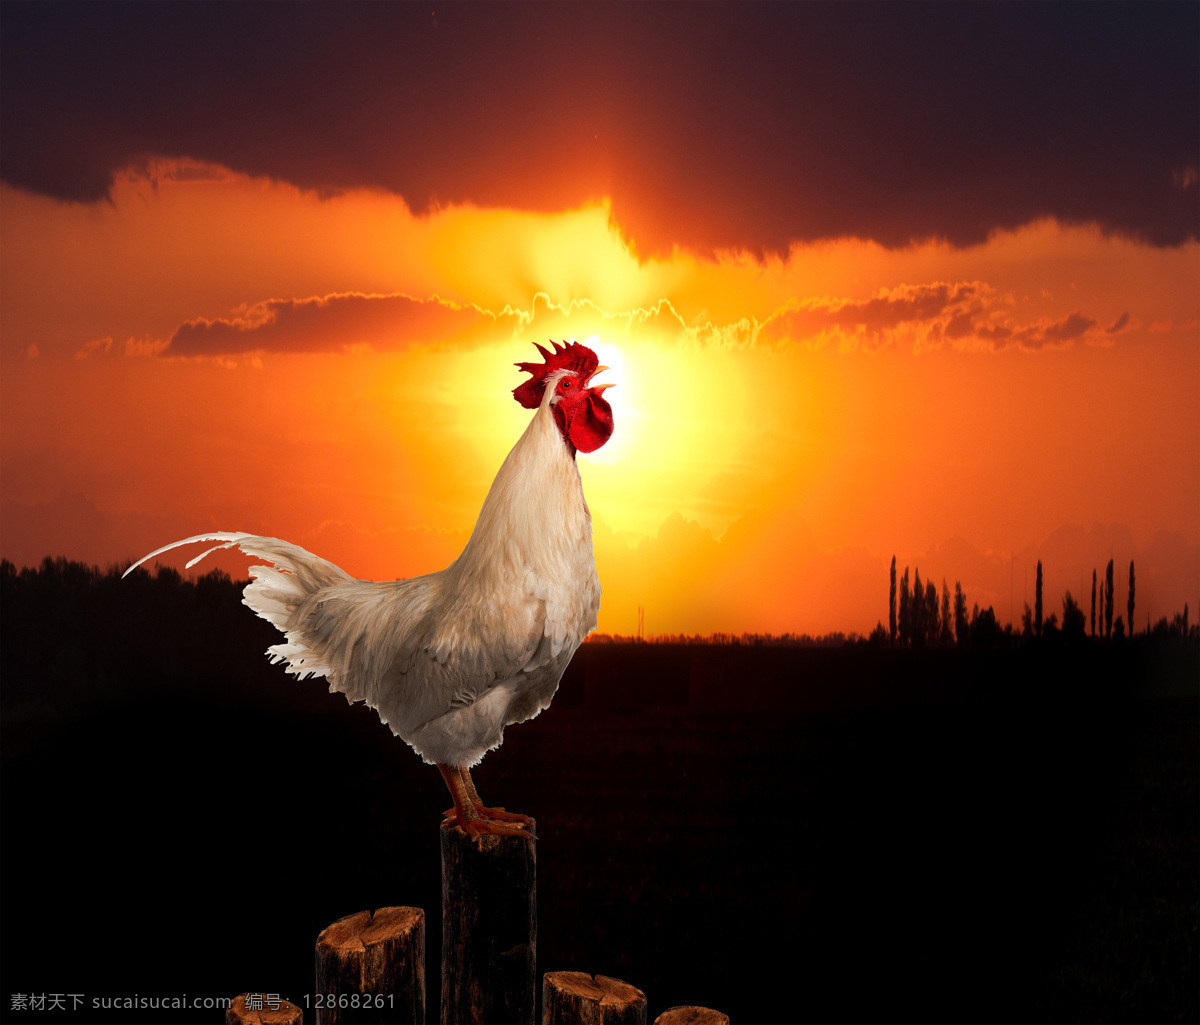 清晨 打鸣 公鸡 鸡 家禽动物 鸡摄影 陆地动物 生物世界 黑色